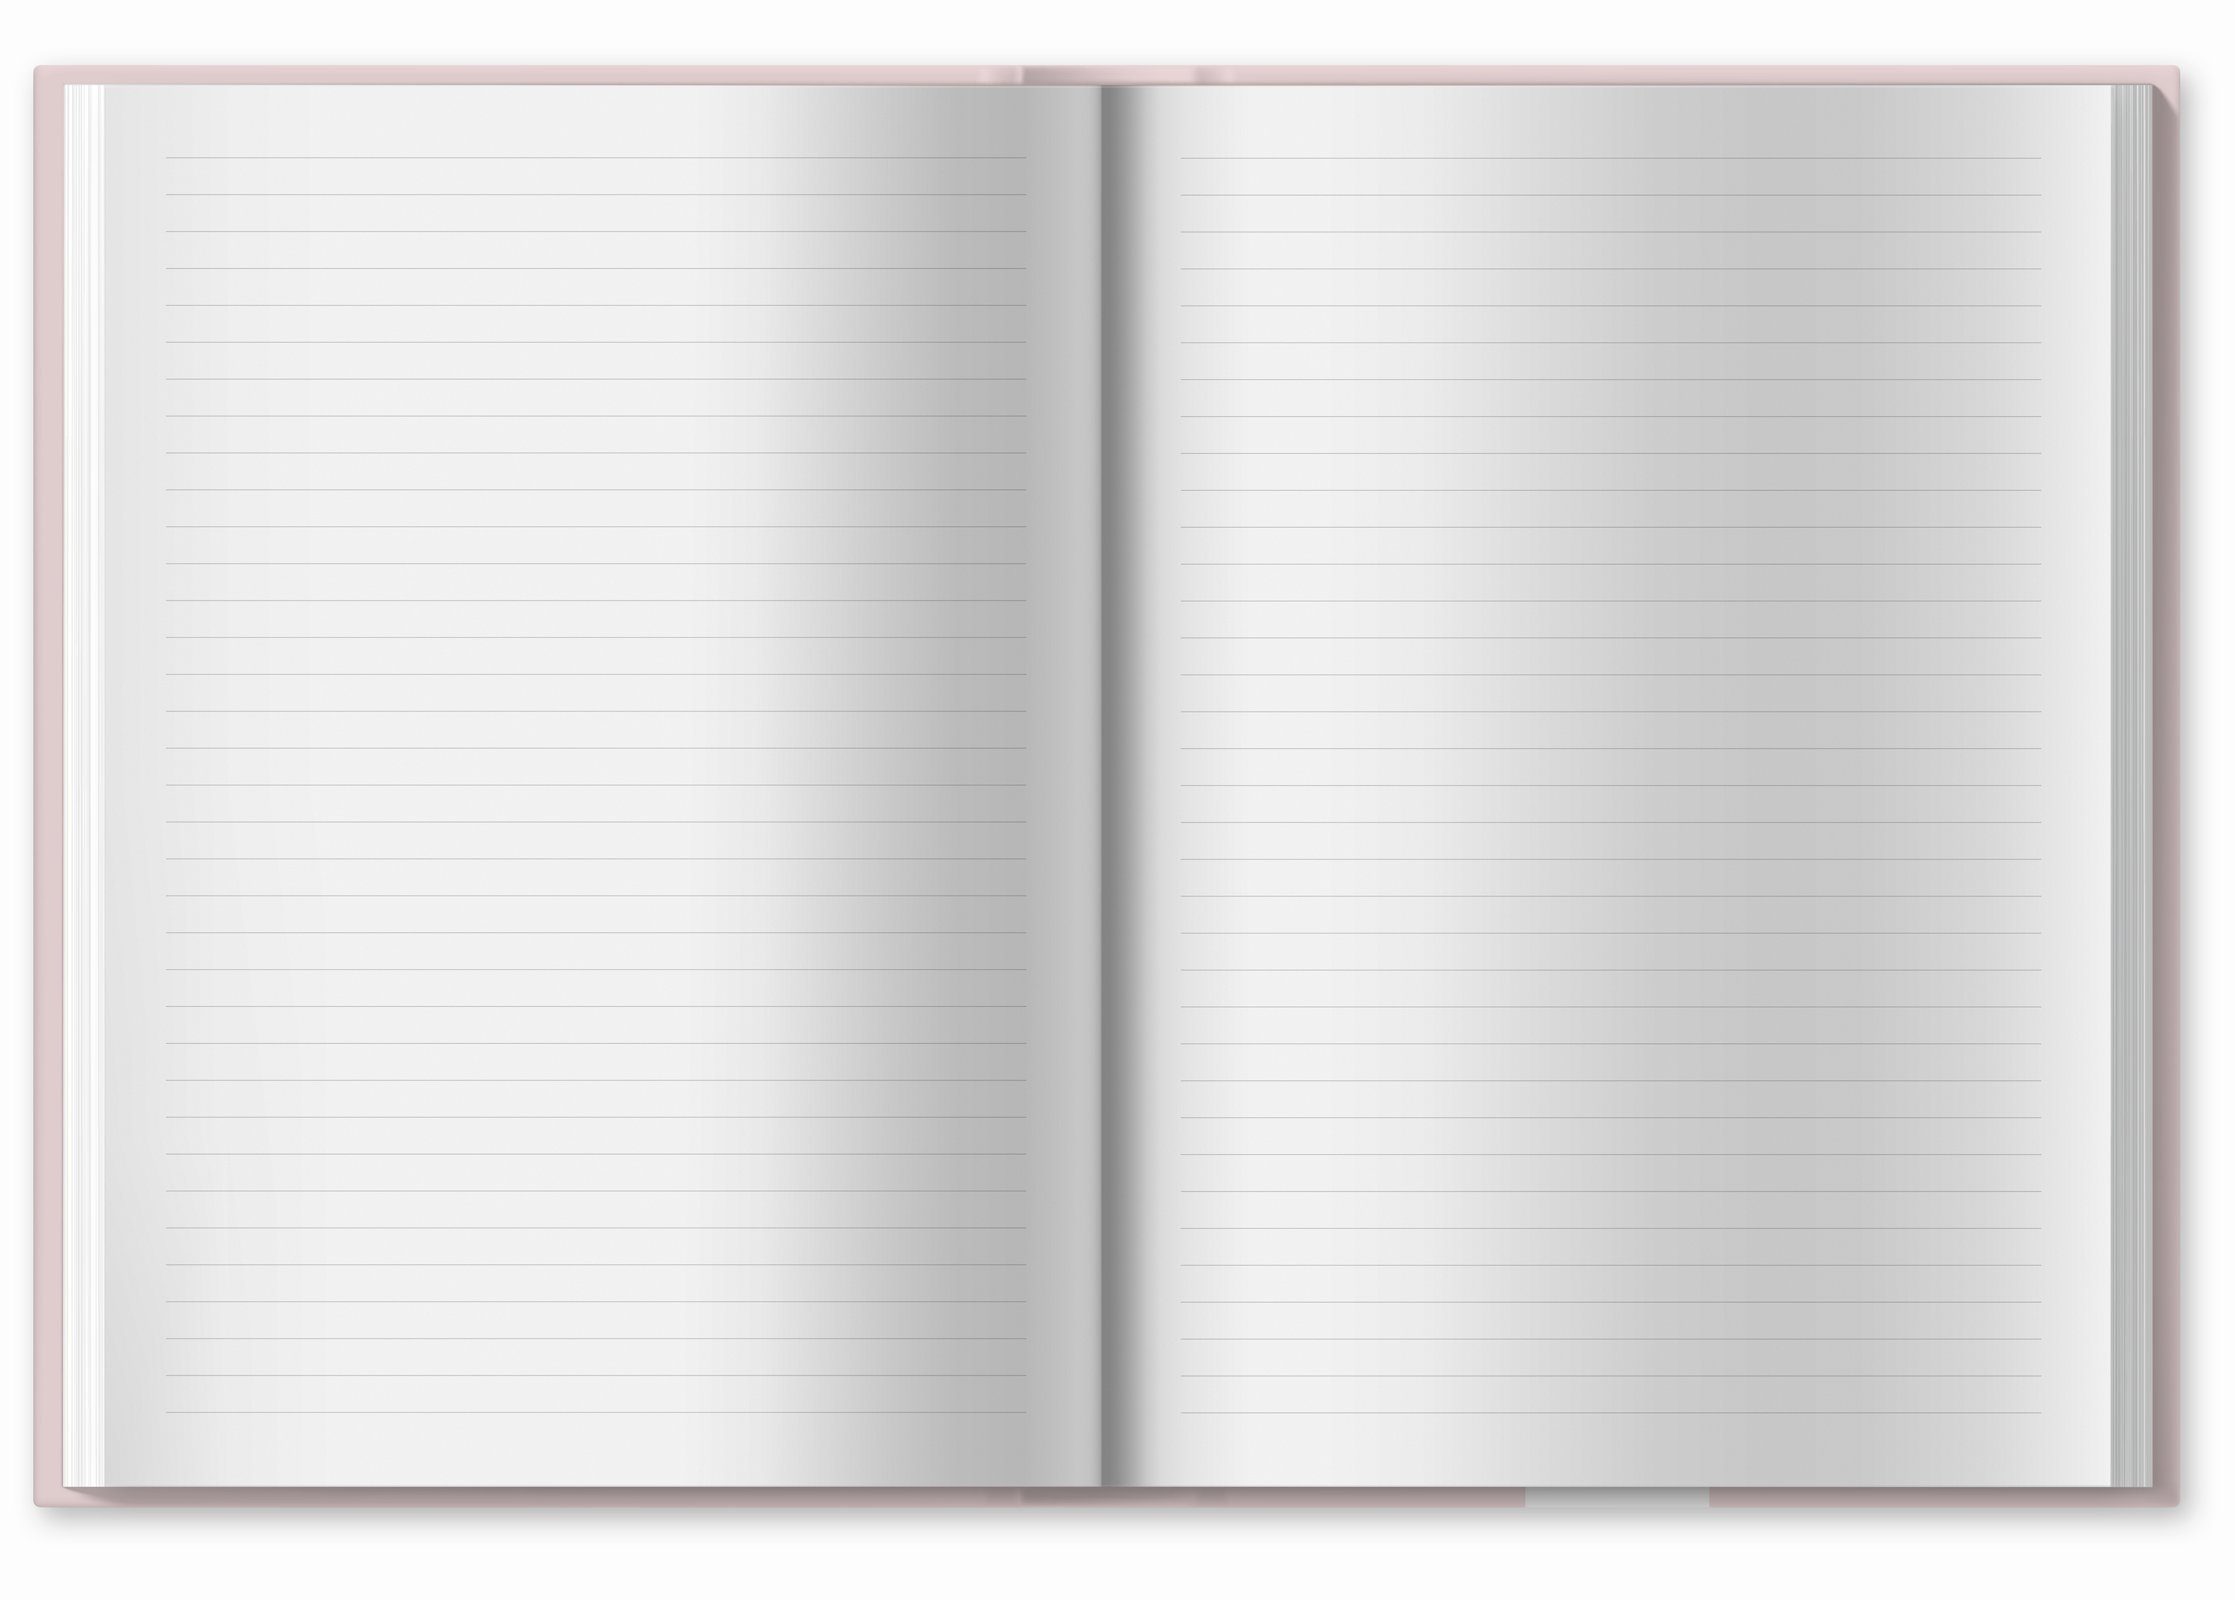 - Notizbuch FSC 120 Seiten, 17x24 Hardcover der Papier, großes g cm liniert, Liebes 80 Linien rosa, Verlag mit Tagebuch Guten Eine Tagebuch